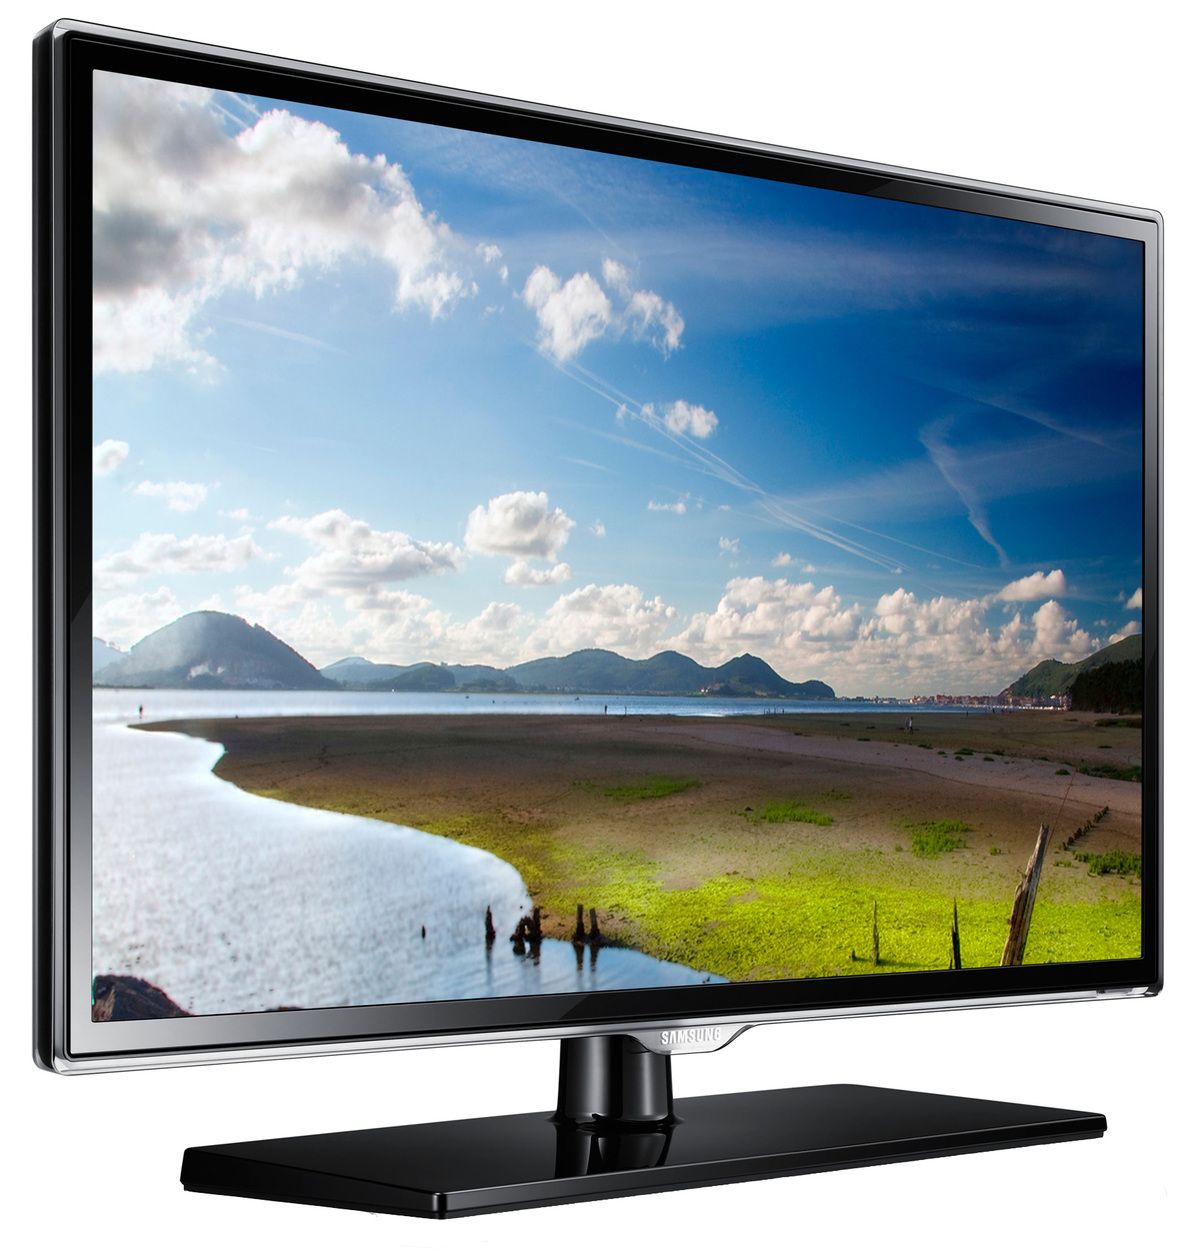 Купить телевизор в н н. Samsung ue32es5507k. Телевизор Samsung ue32es5507v. Телевизор самсунг модель ue32es5507v. Телевизор самсунг 32 жидкокристаллический.